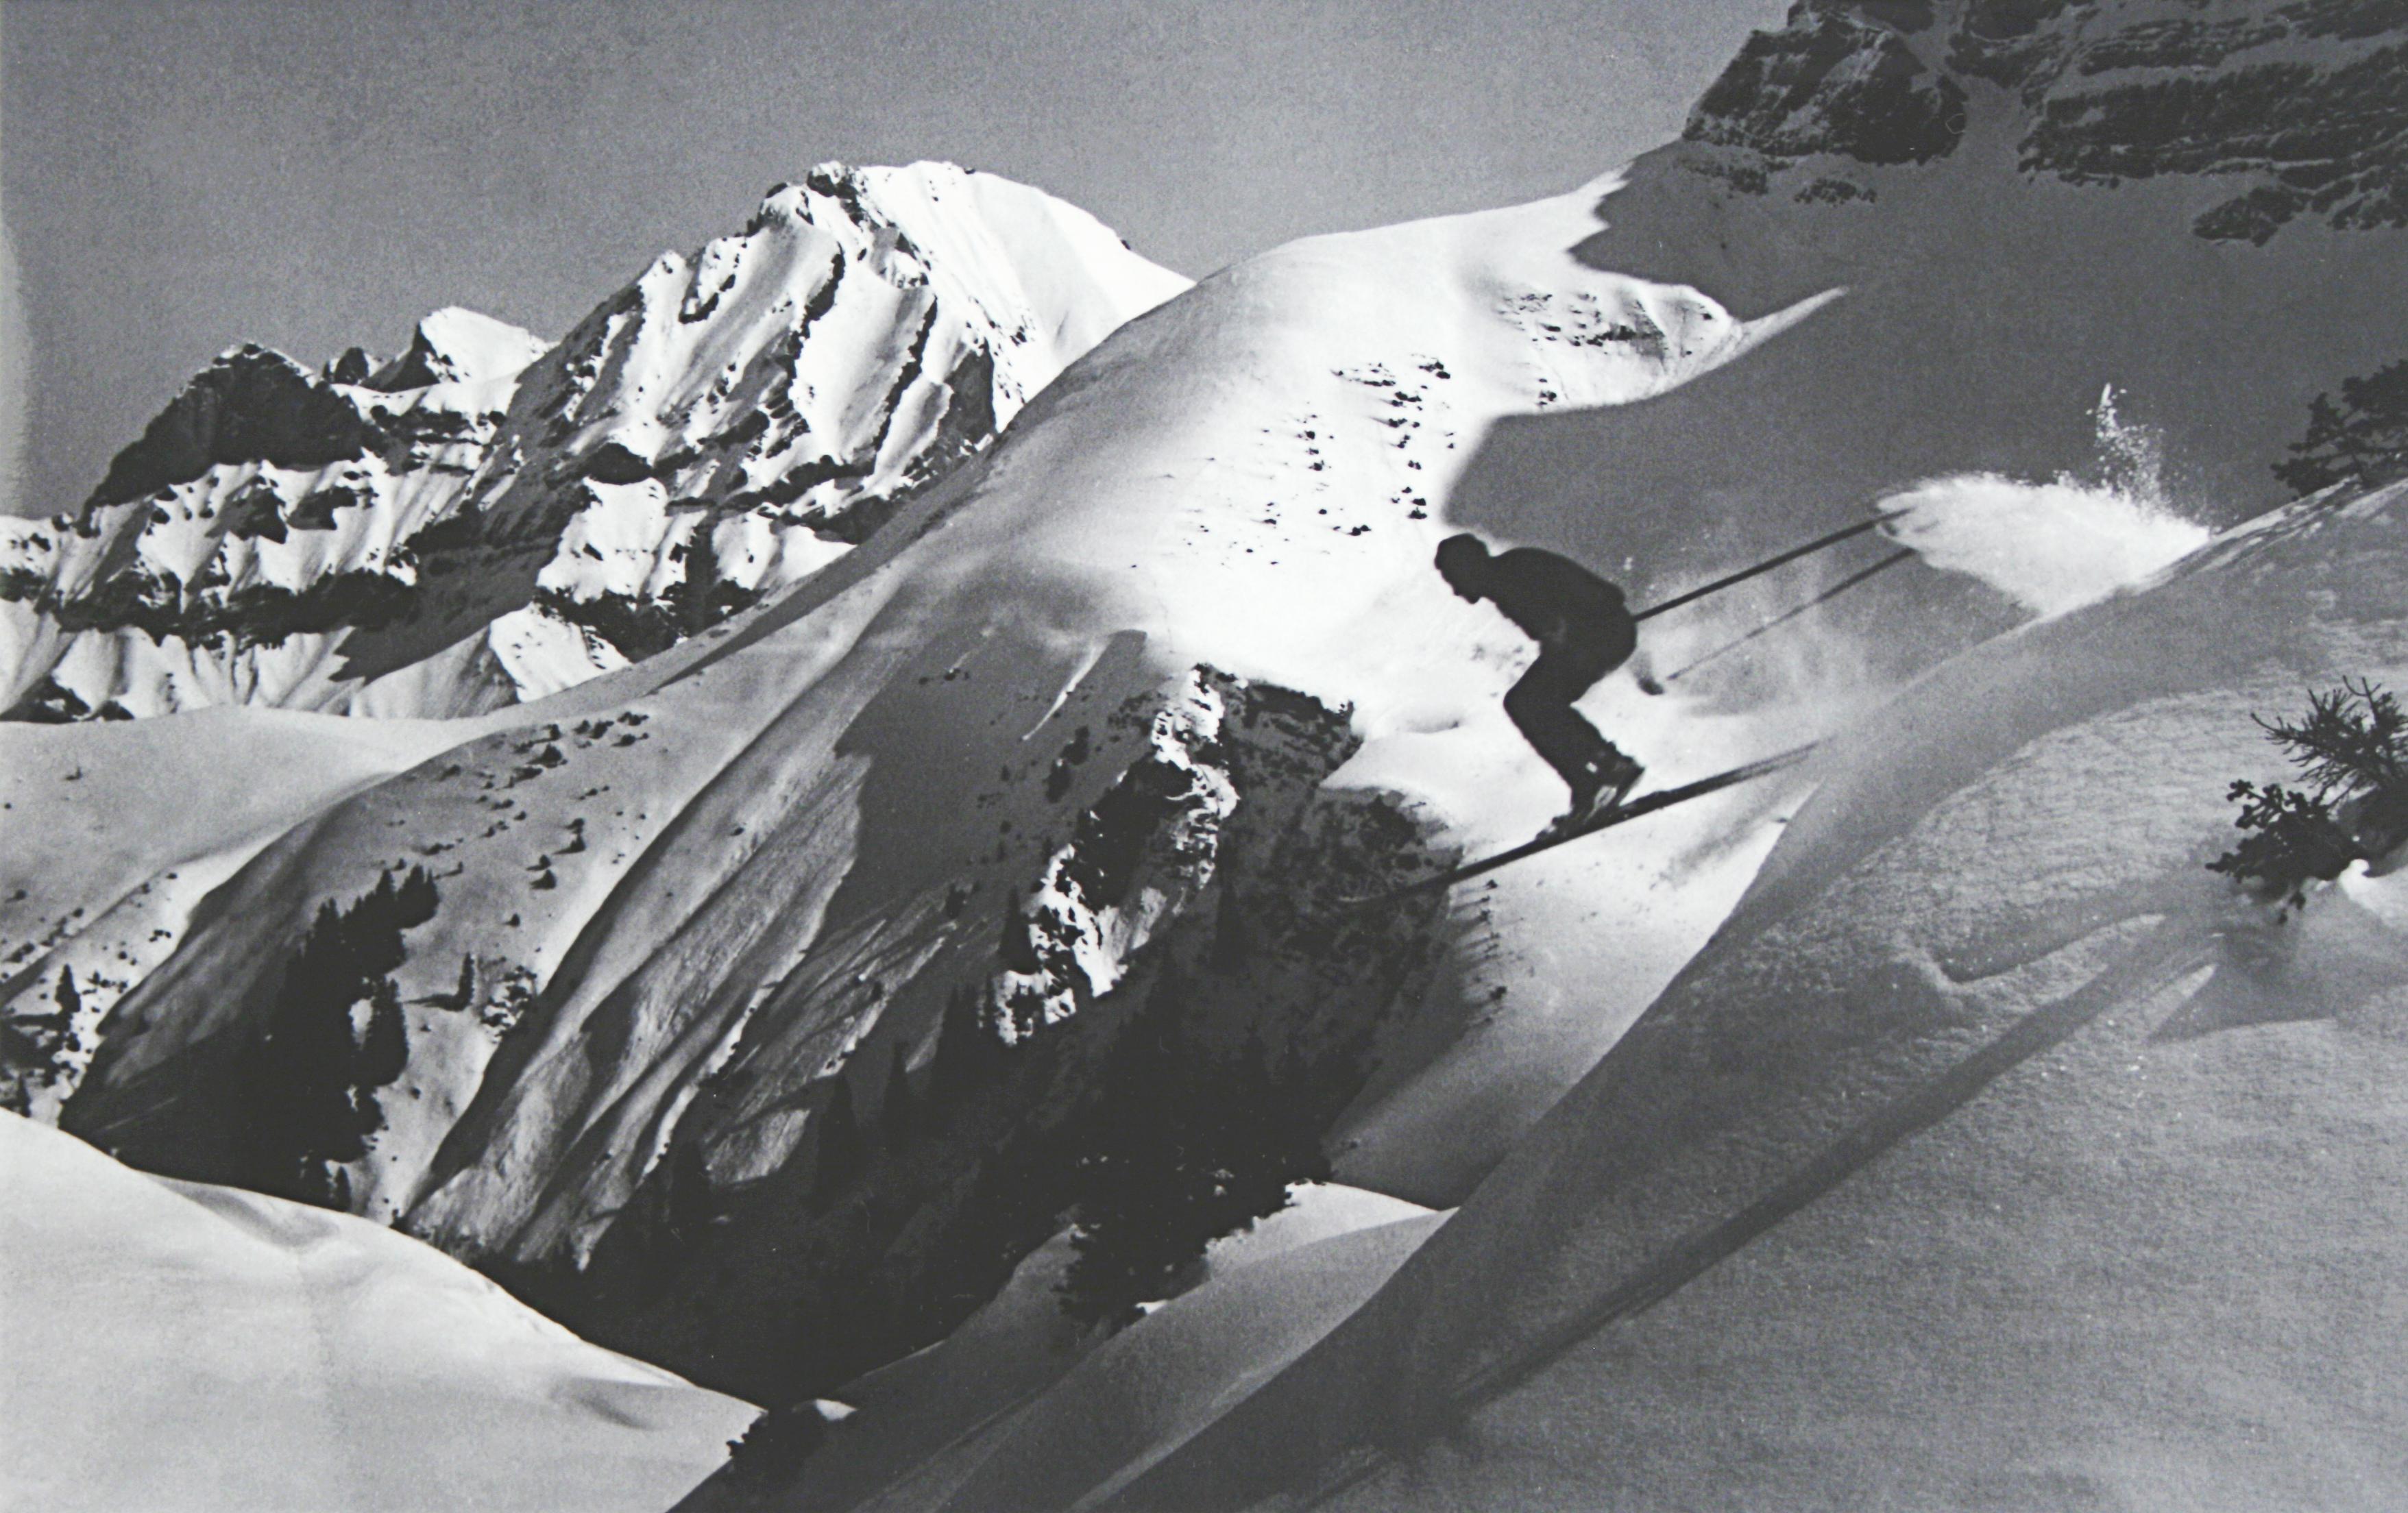 Vintage, photographie de ski alpin.
tHE JUMP